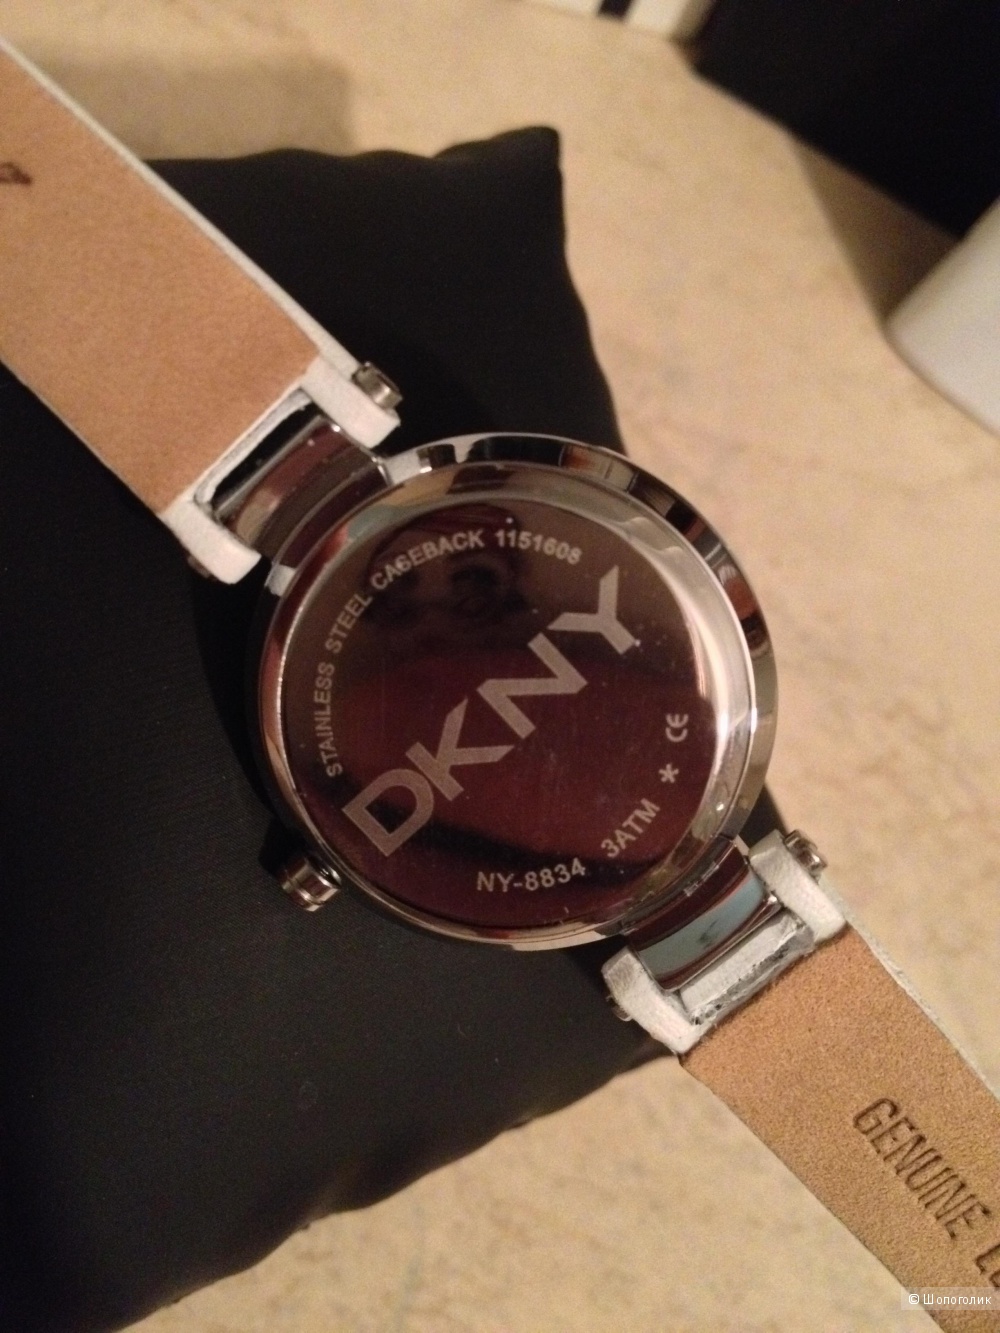 Оригинальные часы DKNY на белом кожаном ремешке.